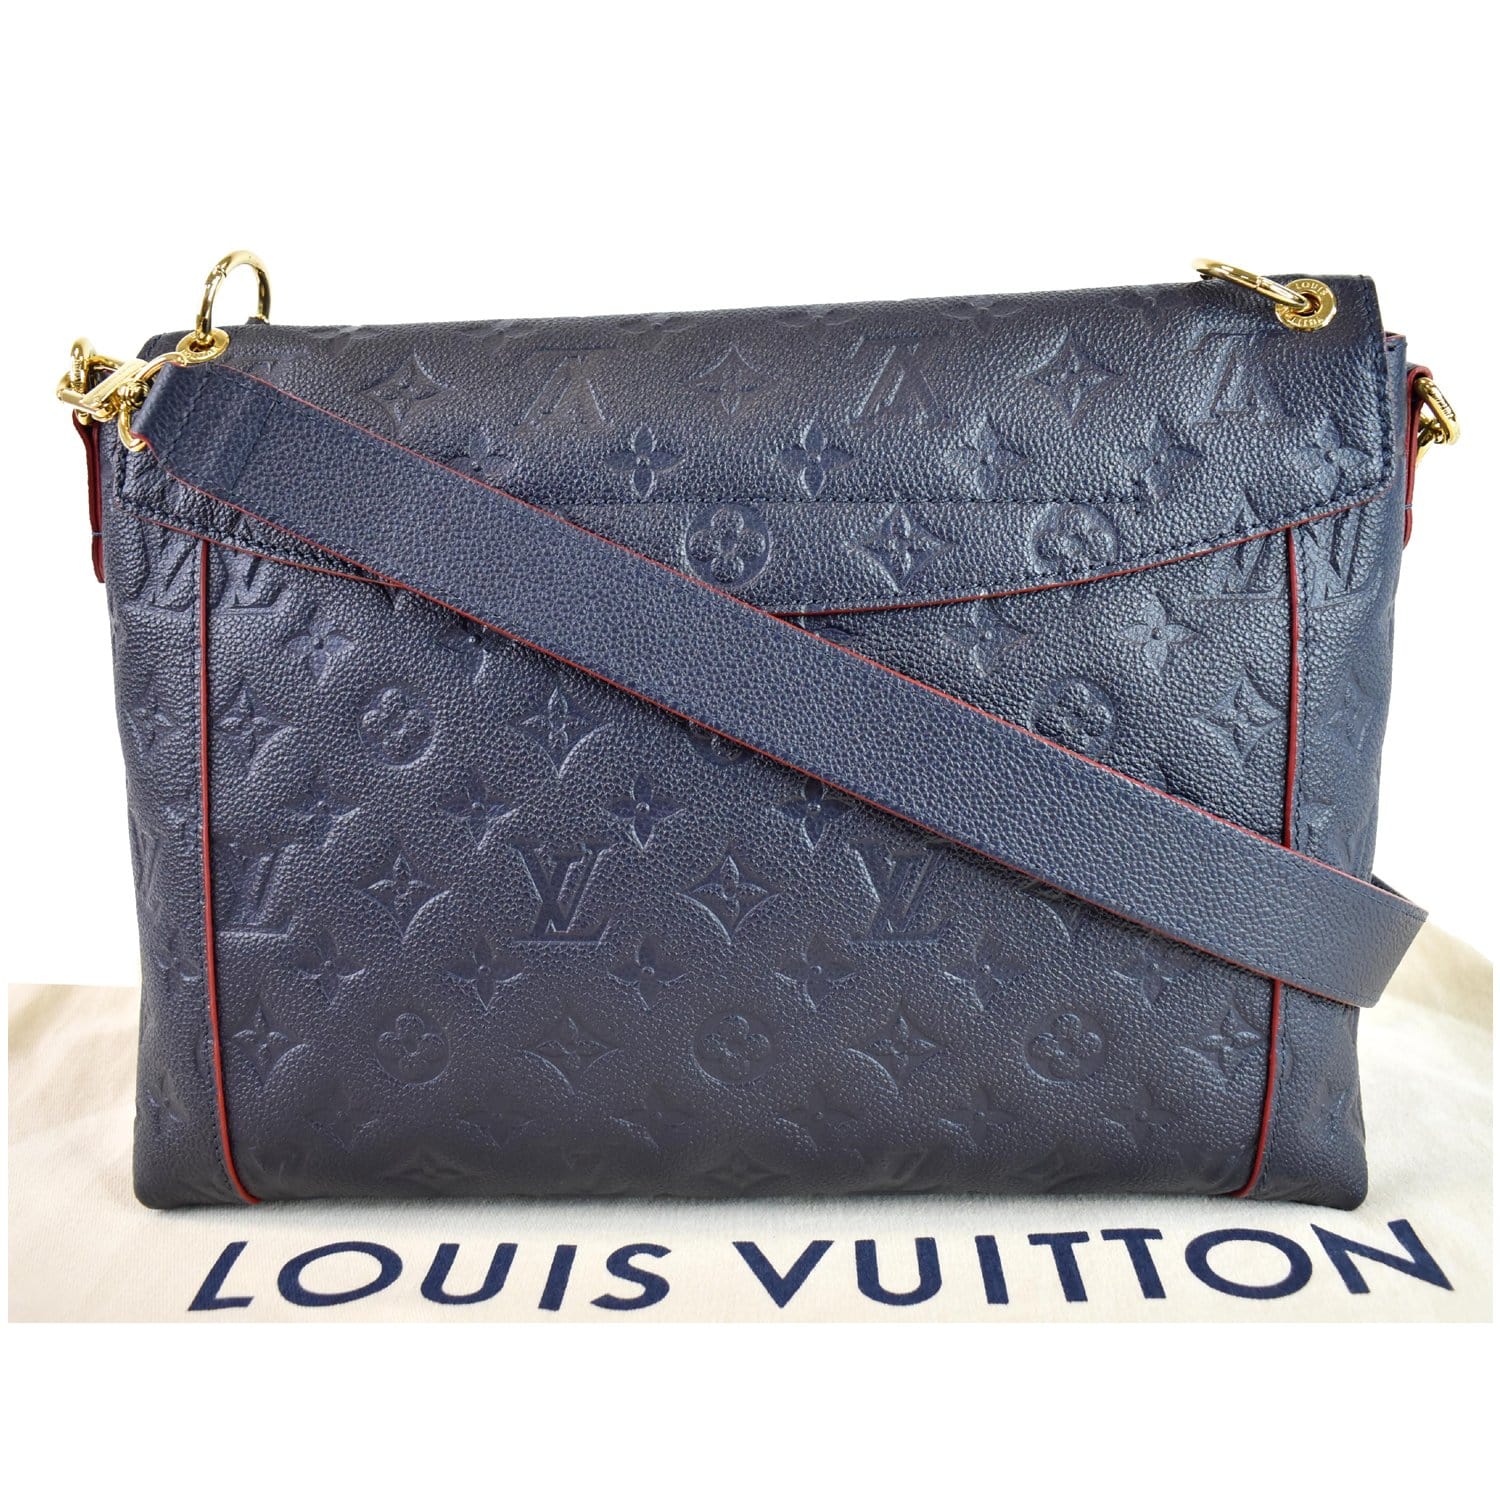 PRE-LOVED Louis Vuitton The Monogram Empreinte Blanche MM